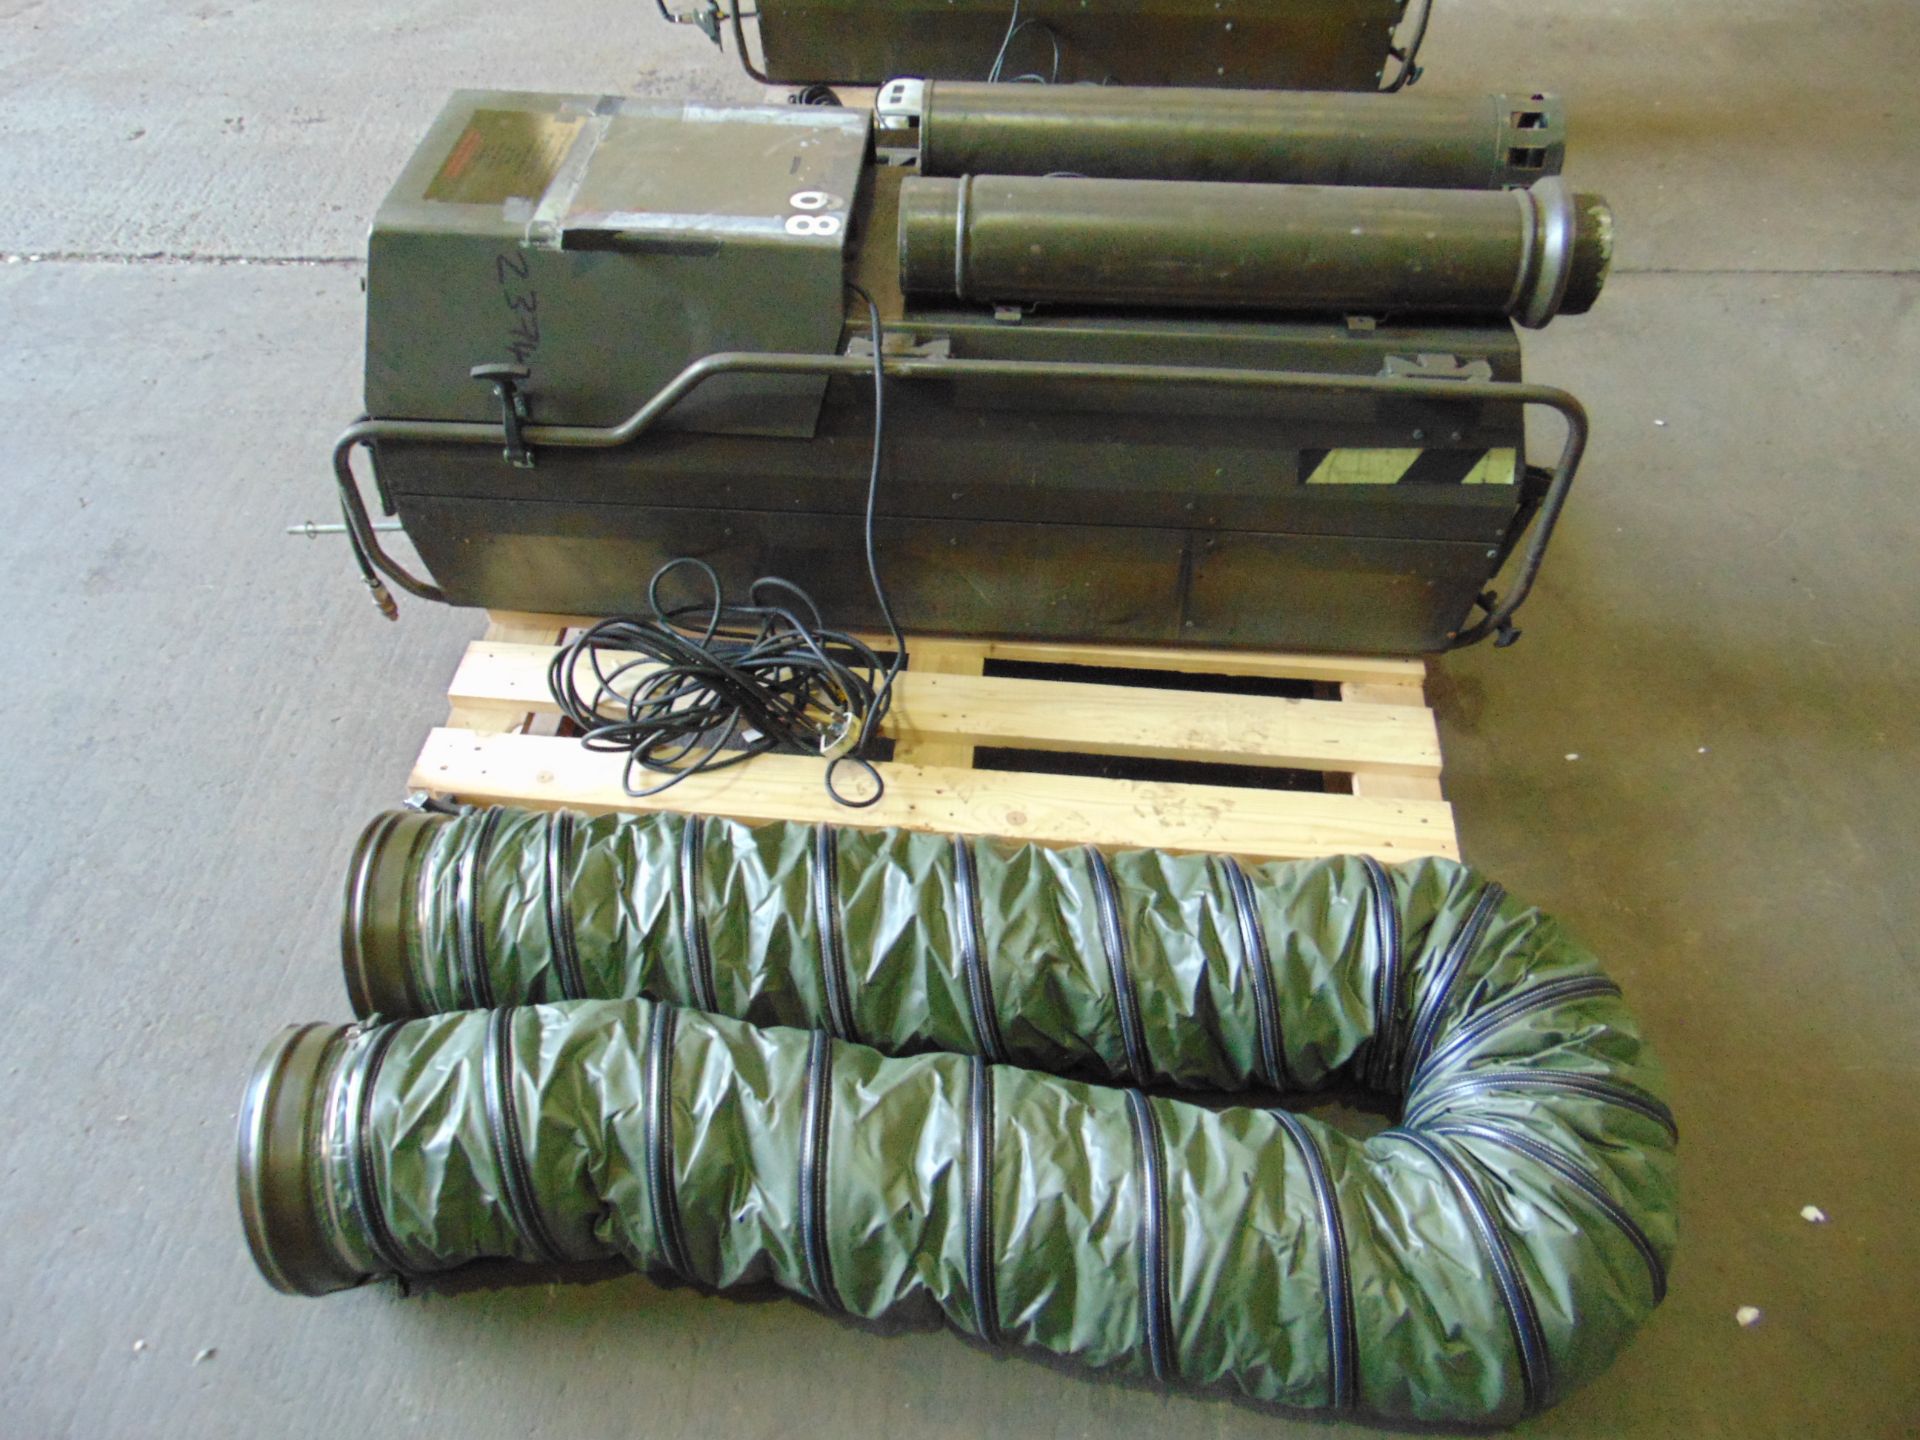 Dantherm VAM 15 portable workshop/building heater 240 volt c/w accessories as shown